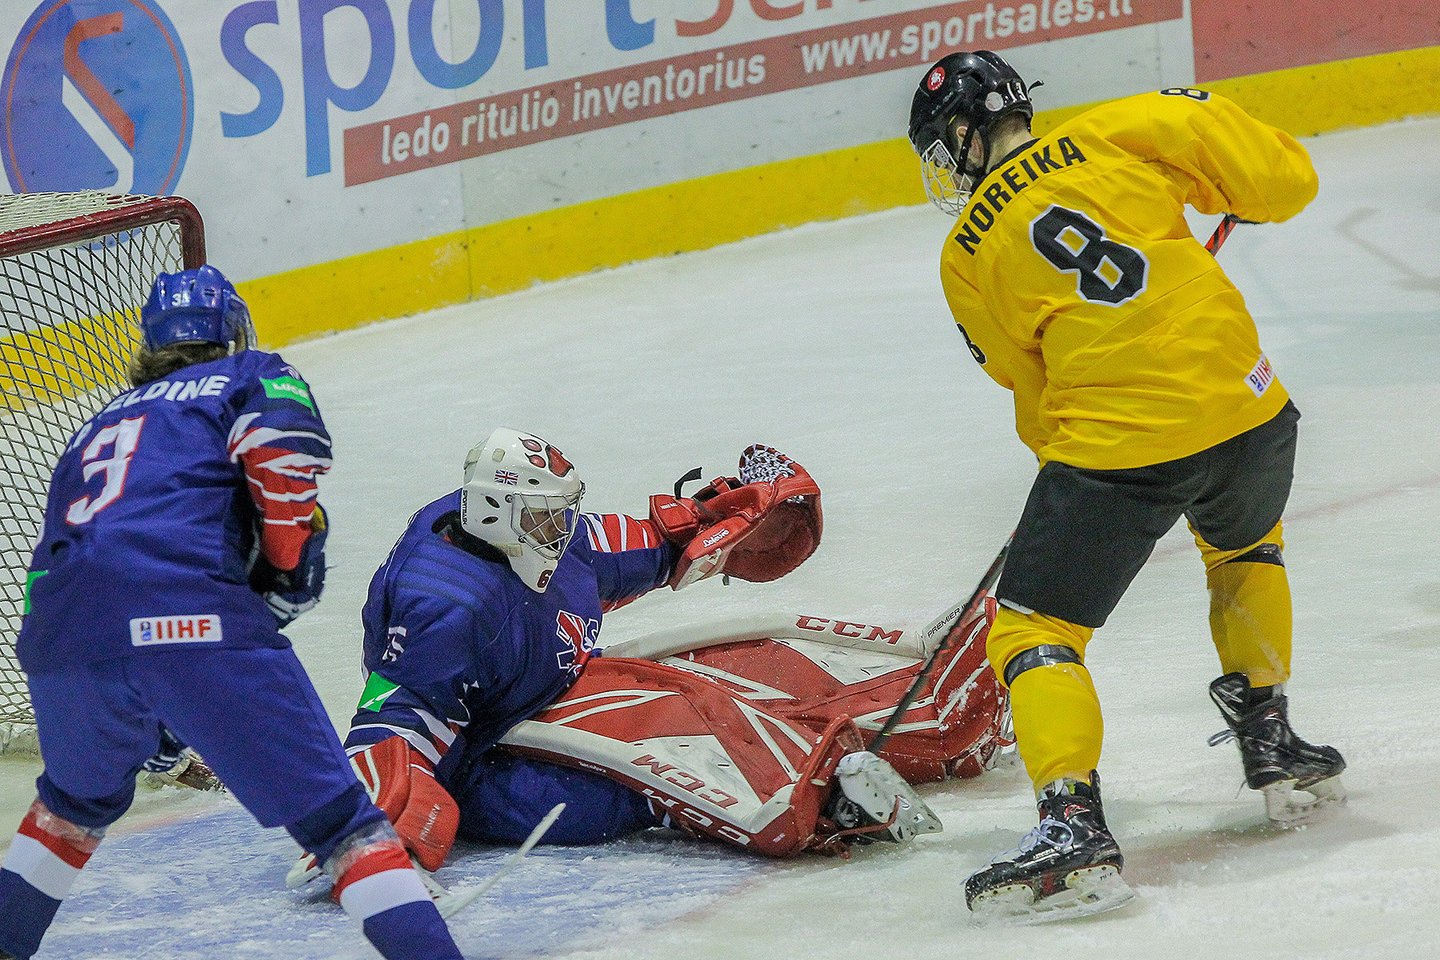  Lietuvos rinktinė šeštadienį antrosiomis kontrolėmis rungtynėmis baigė pasiruošimą pasaulio jaunimo ledo ritulio čempionatui.  <br> Hockey.lt nuotr.